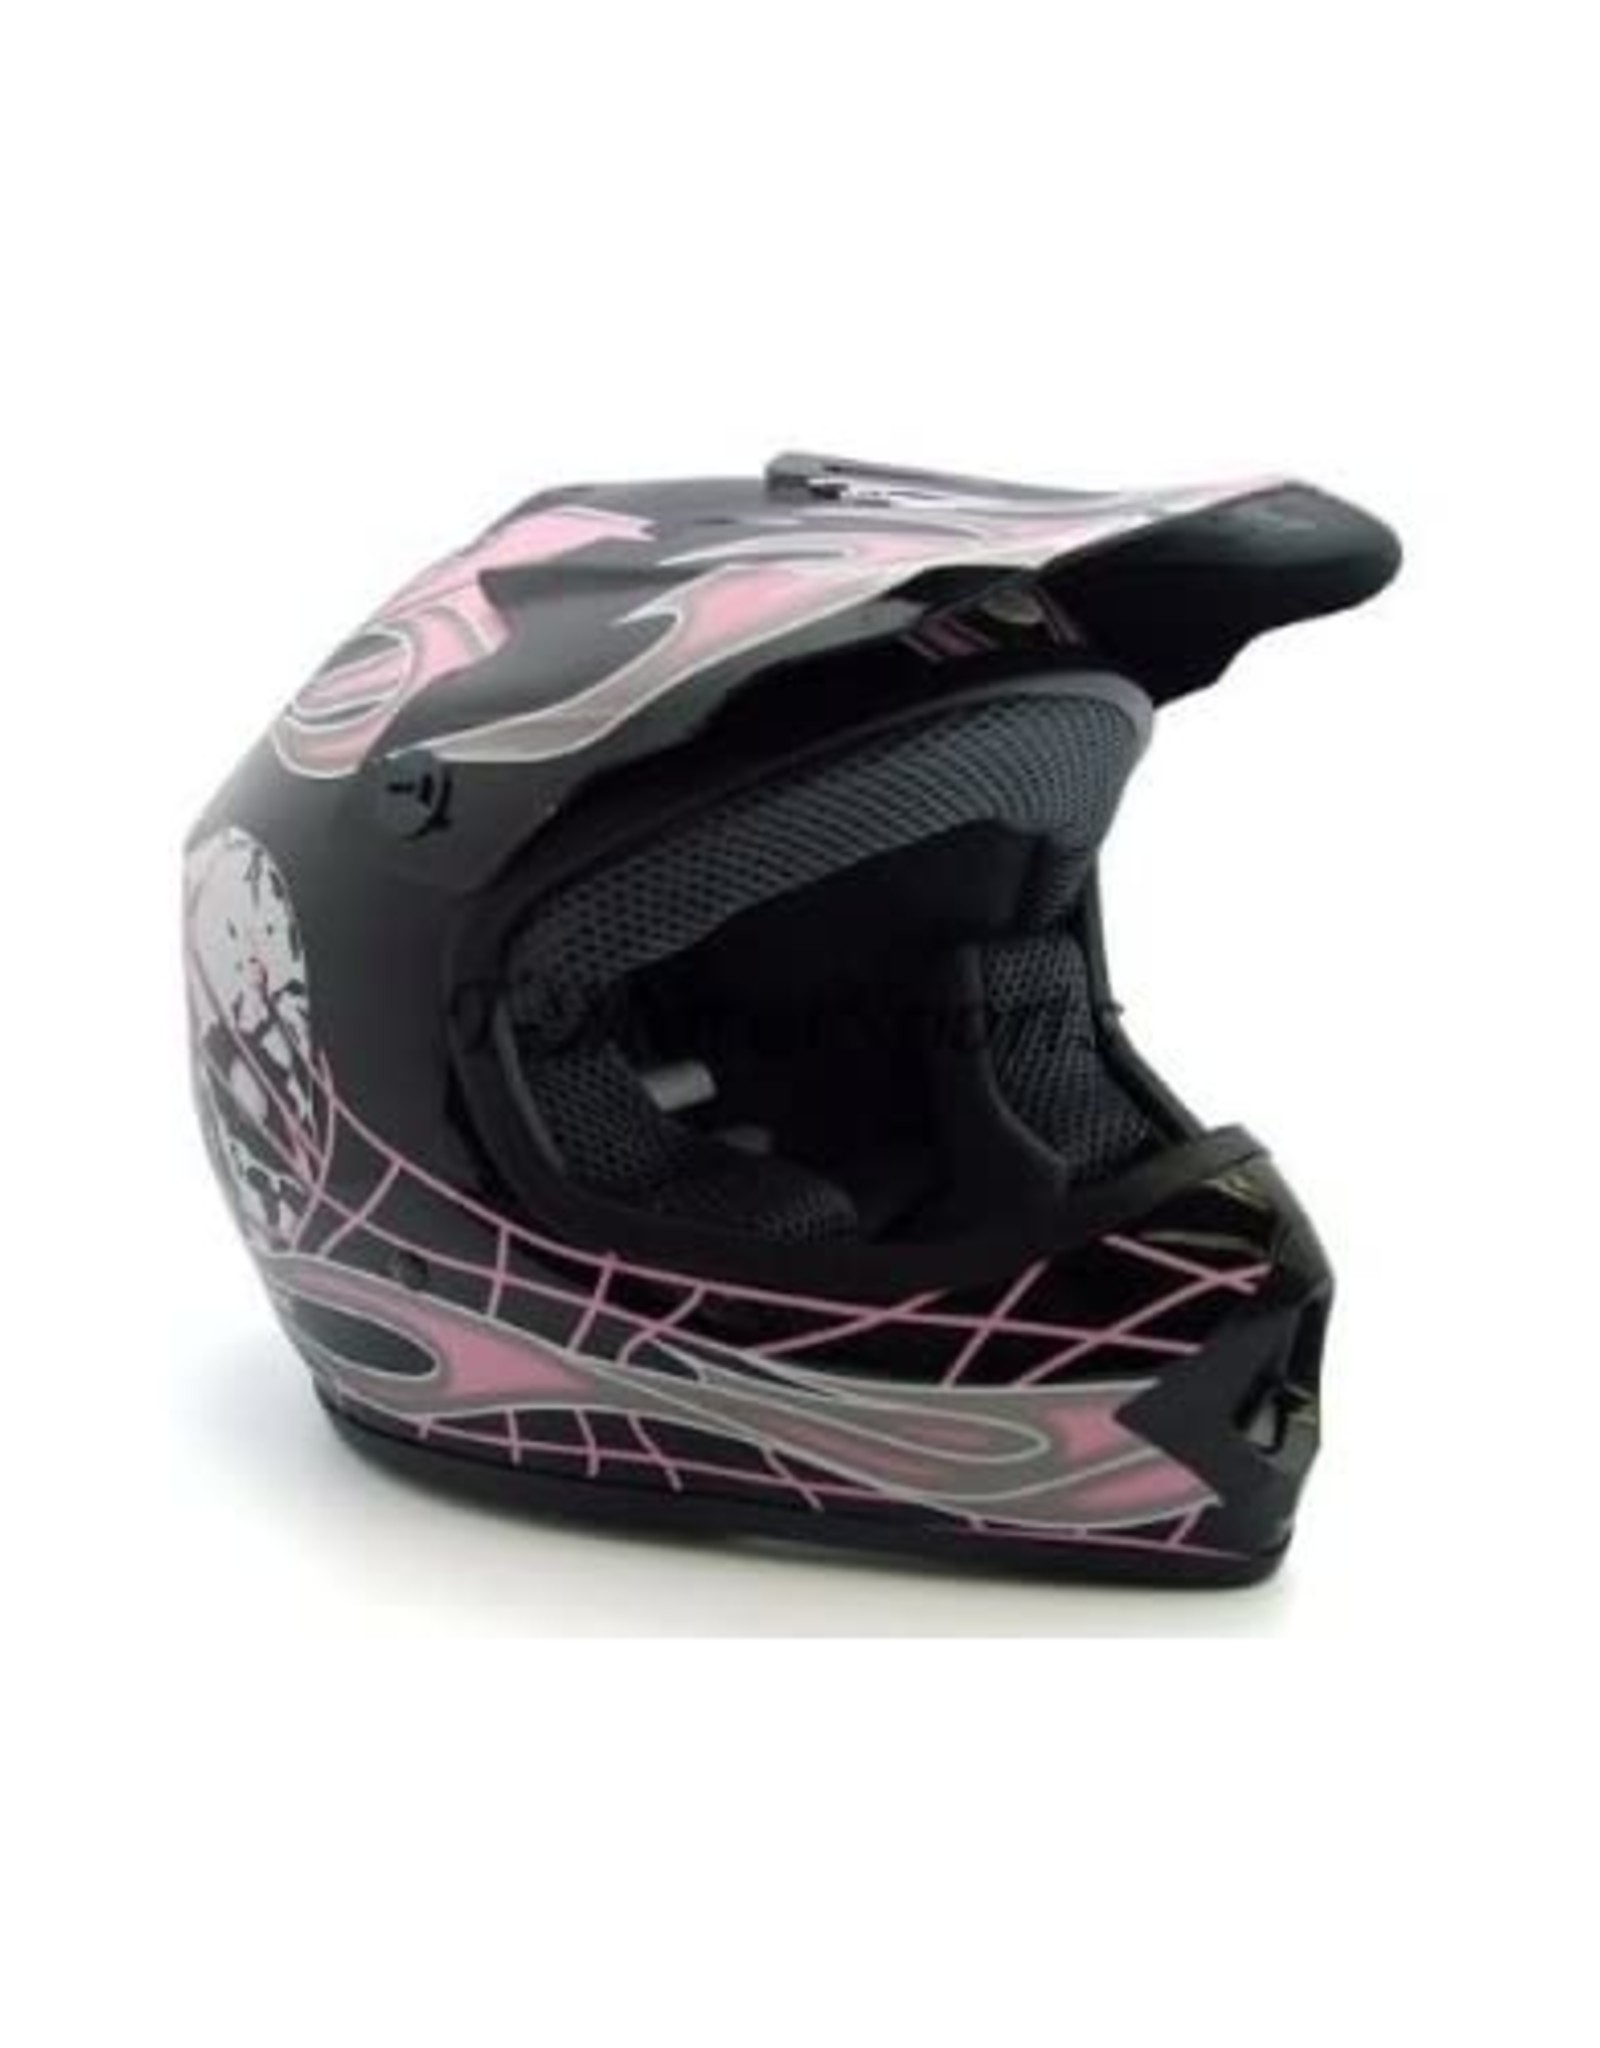 TMS Youth Motocross Helmet